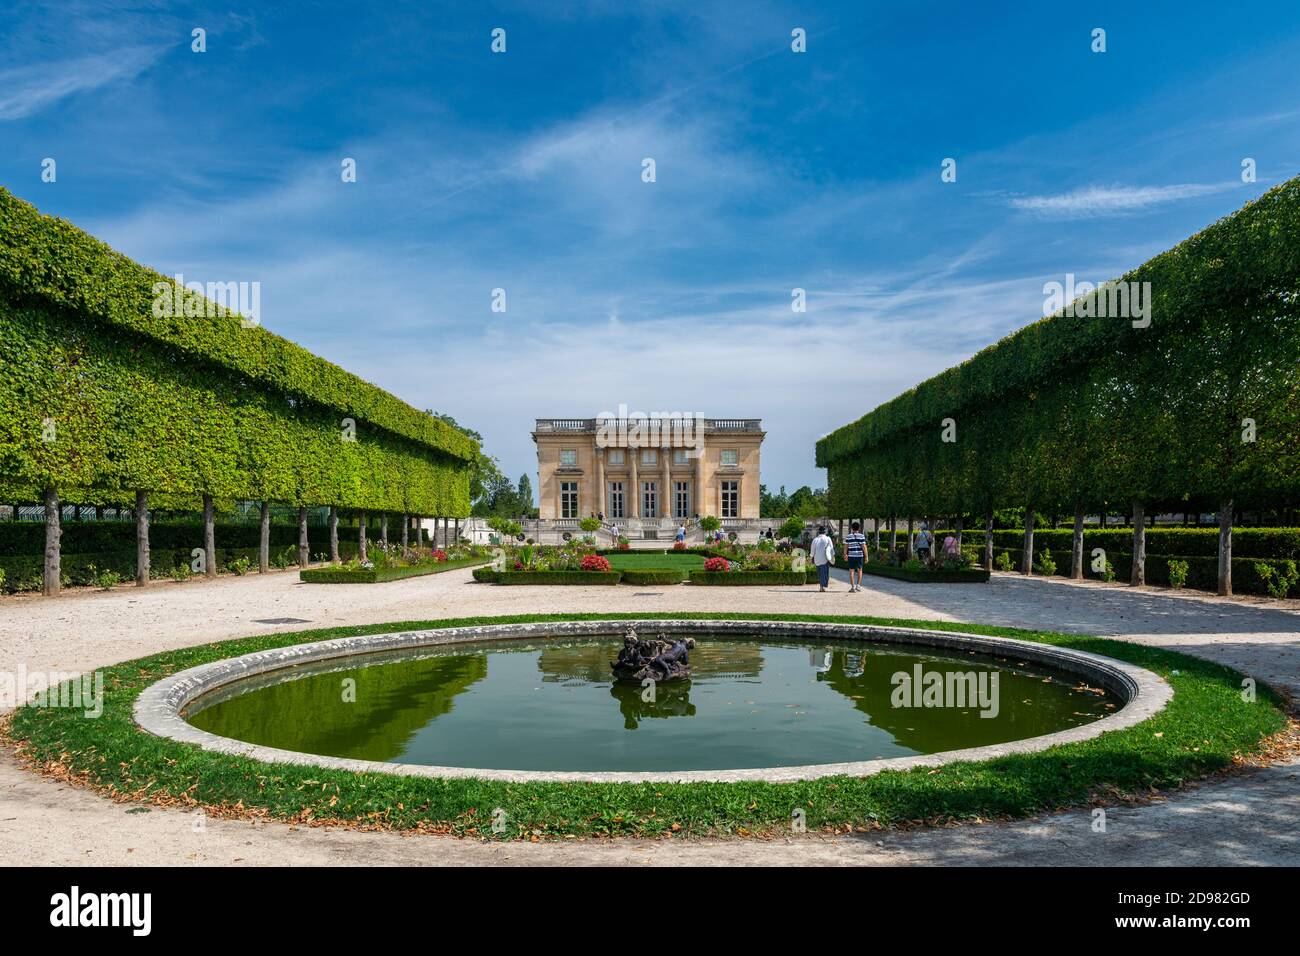 Versailles, Francia - 28 agosto 2019 : turisti vicino al Petit Trianon e al Giardino Francese nel parc de Versailles Palace. Foto Stock